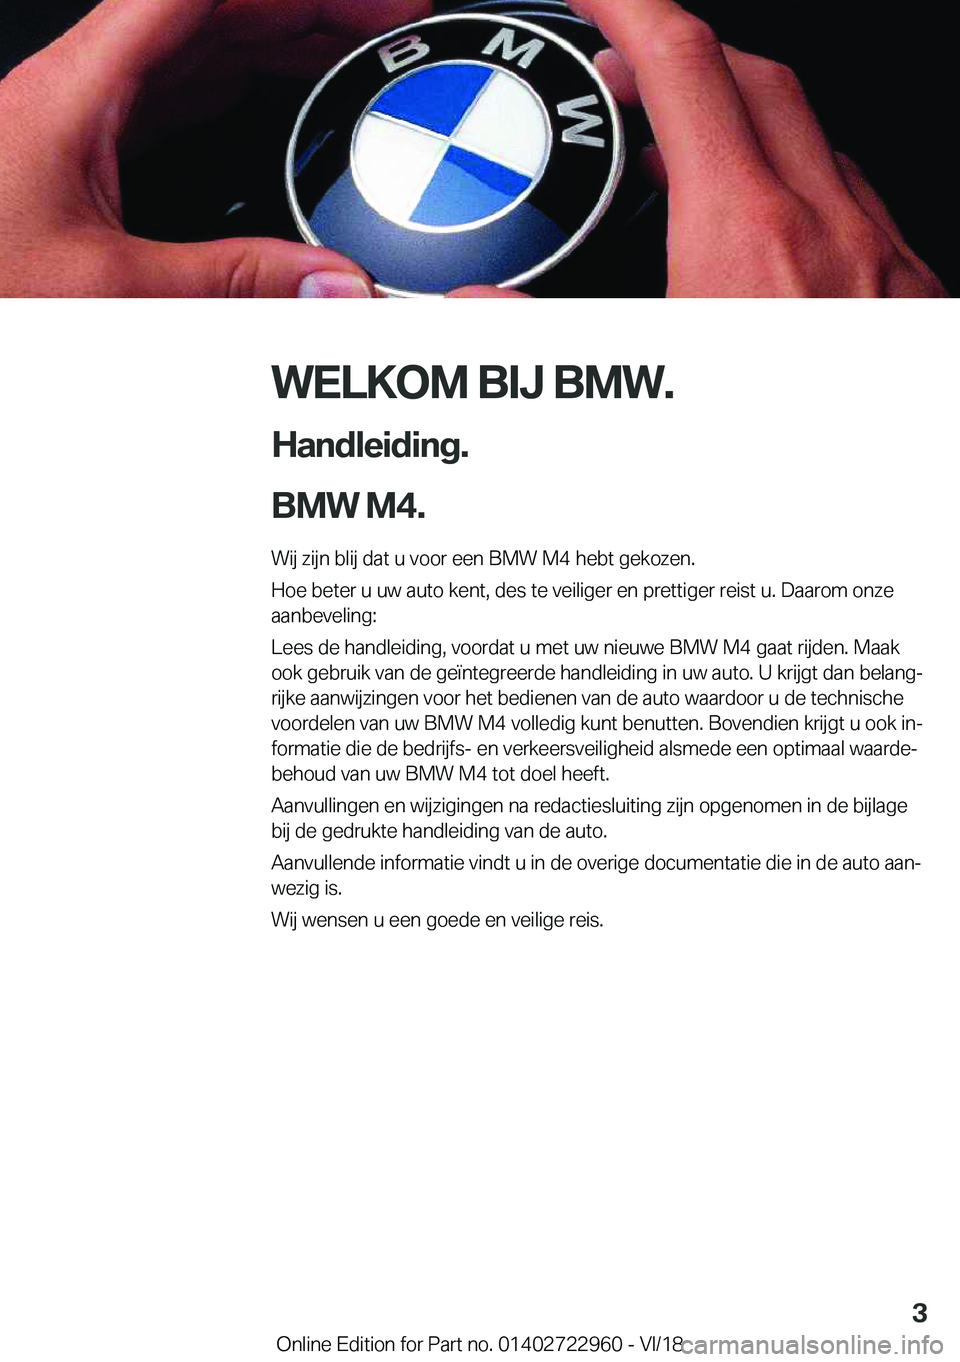 BMW M4 2019  Instructieboekjes (in Dutch) �W�E�L�K�O�M��B�I�J��B�M�W�.
�H�a�n�d�l�e�i�d�i�n�g�.
�B�M�W��M�4�. �W�i�j��z�i�j�n��b�l�i�j��d�a�t��u��v�o�o�r��e�e�n��B�M�W��M�4��h�e�b�t��g�e�k�o�z�e�n�.
�H�o�e��b�e�t�e�r��u��u�w�